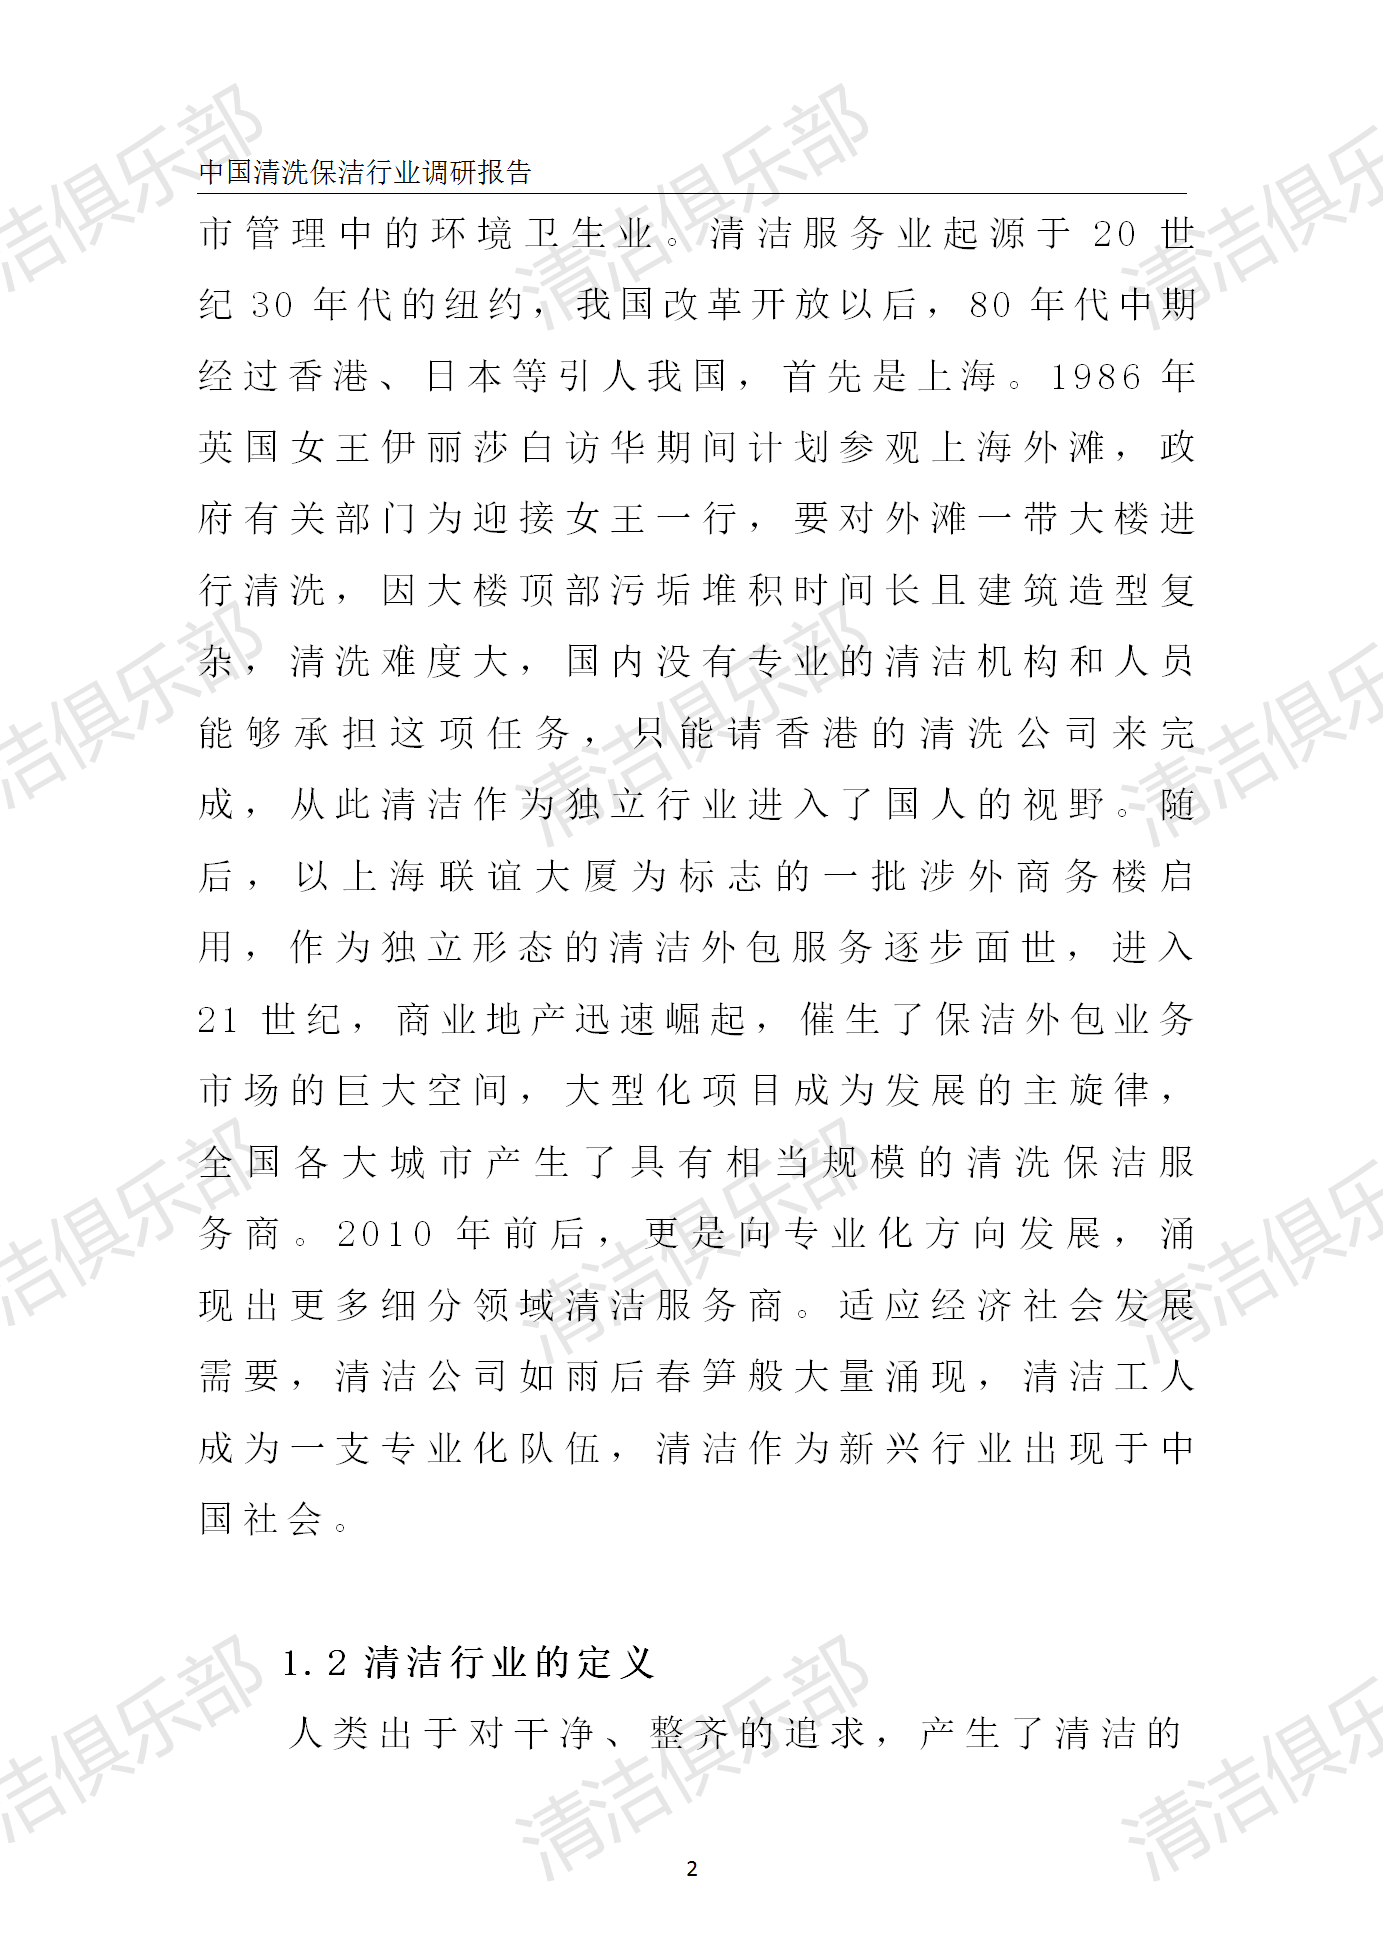 中国清洗保洁行业调研报告排版_12.png